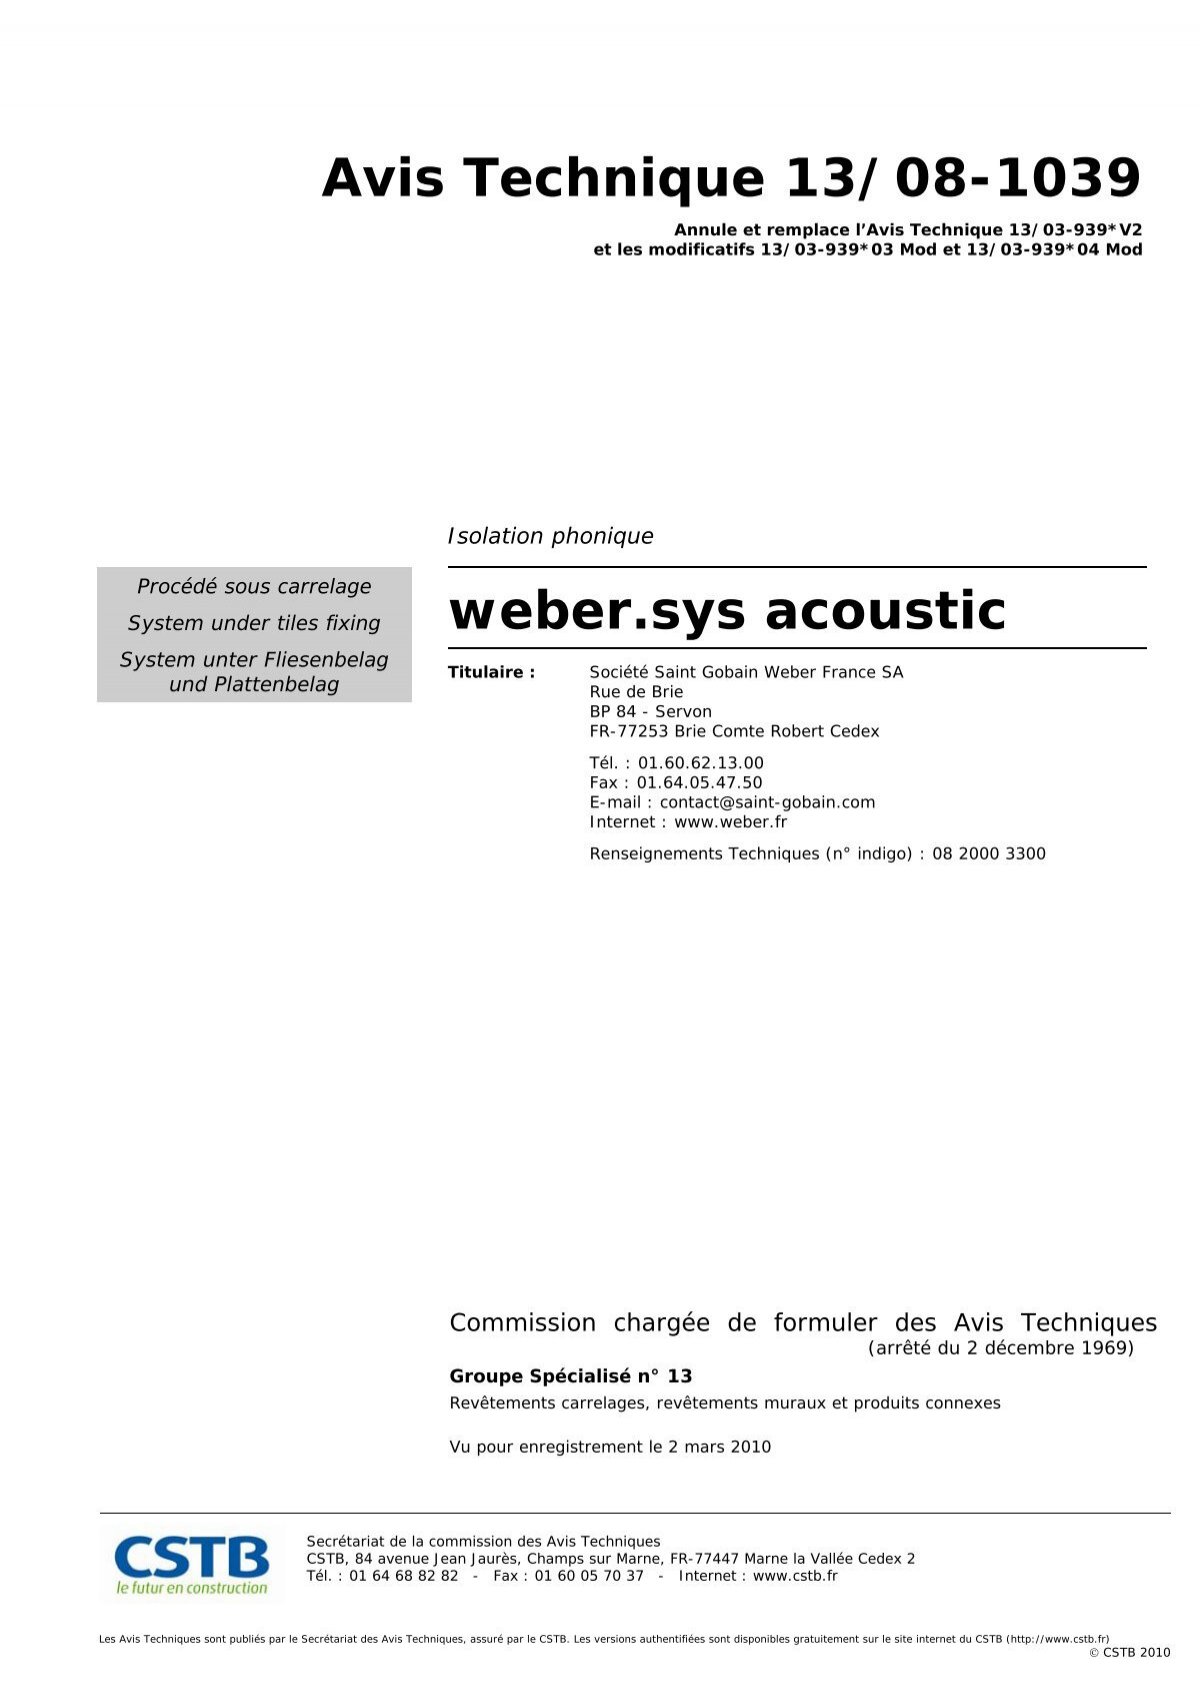 Avis Technique 13/08-1039 weber.sys acoustic - untec